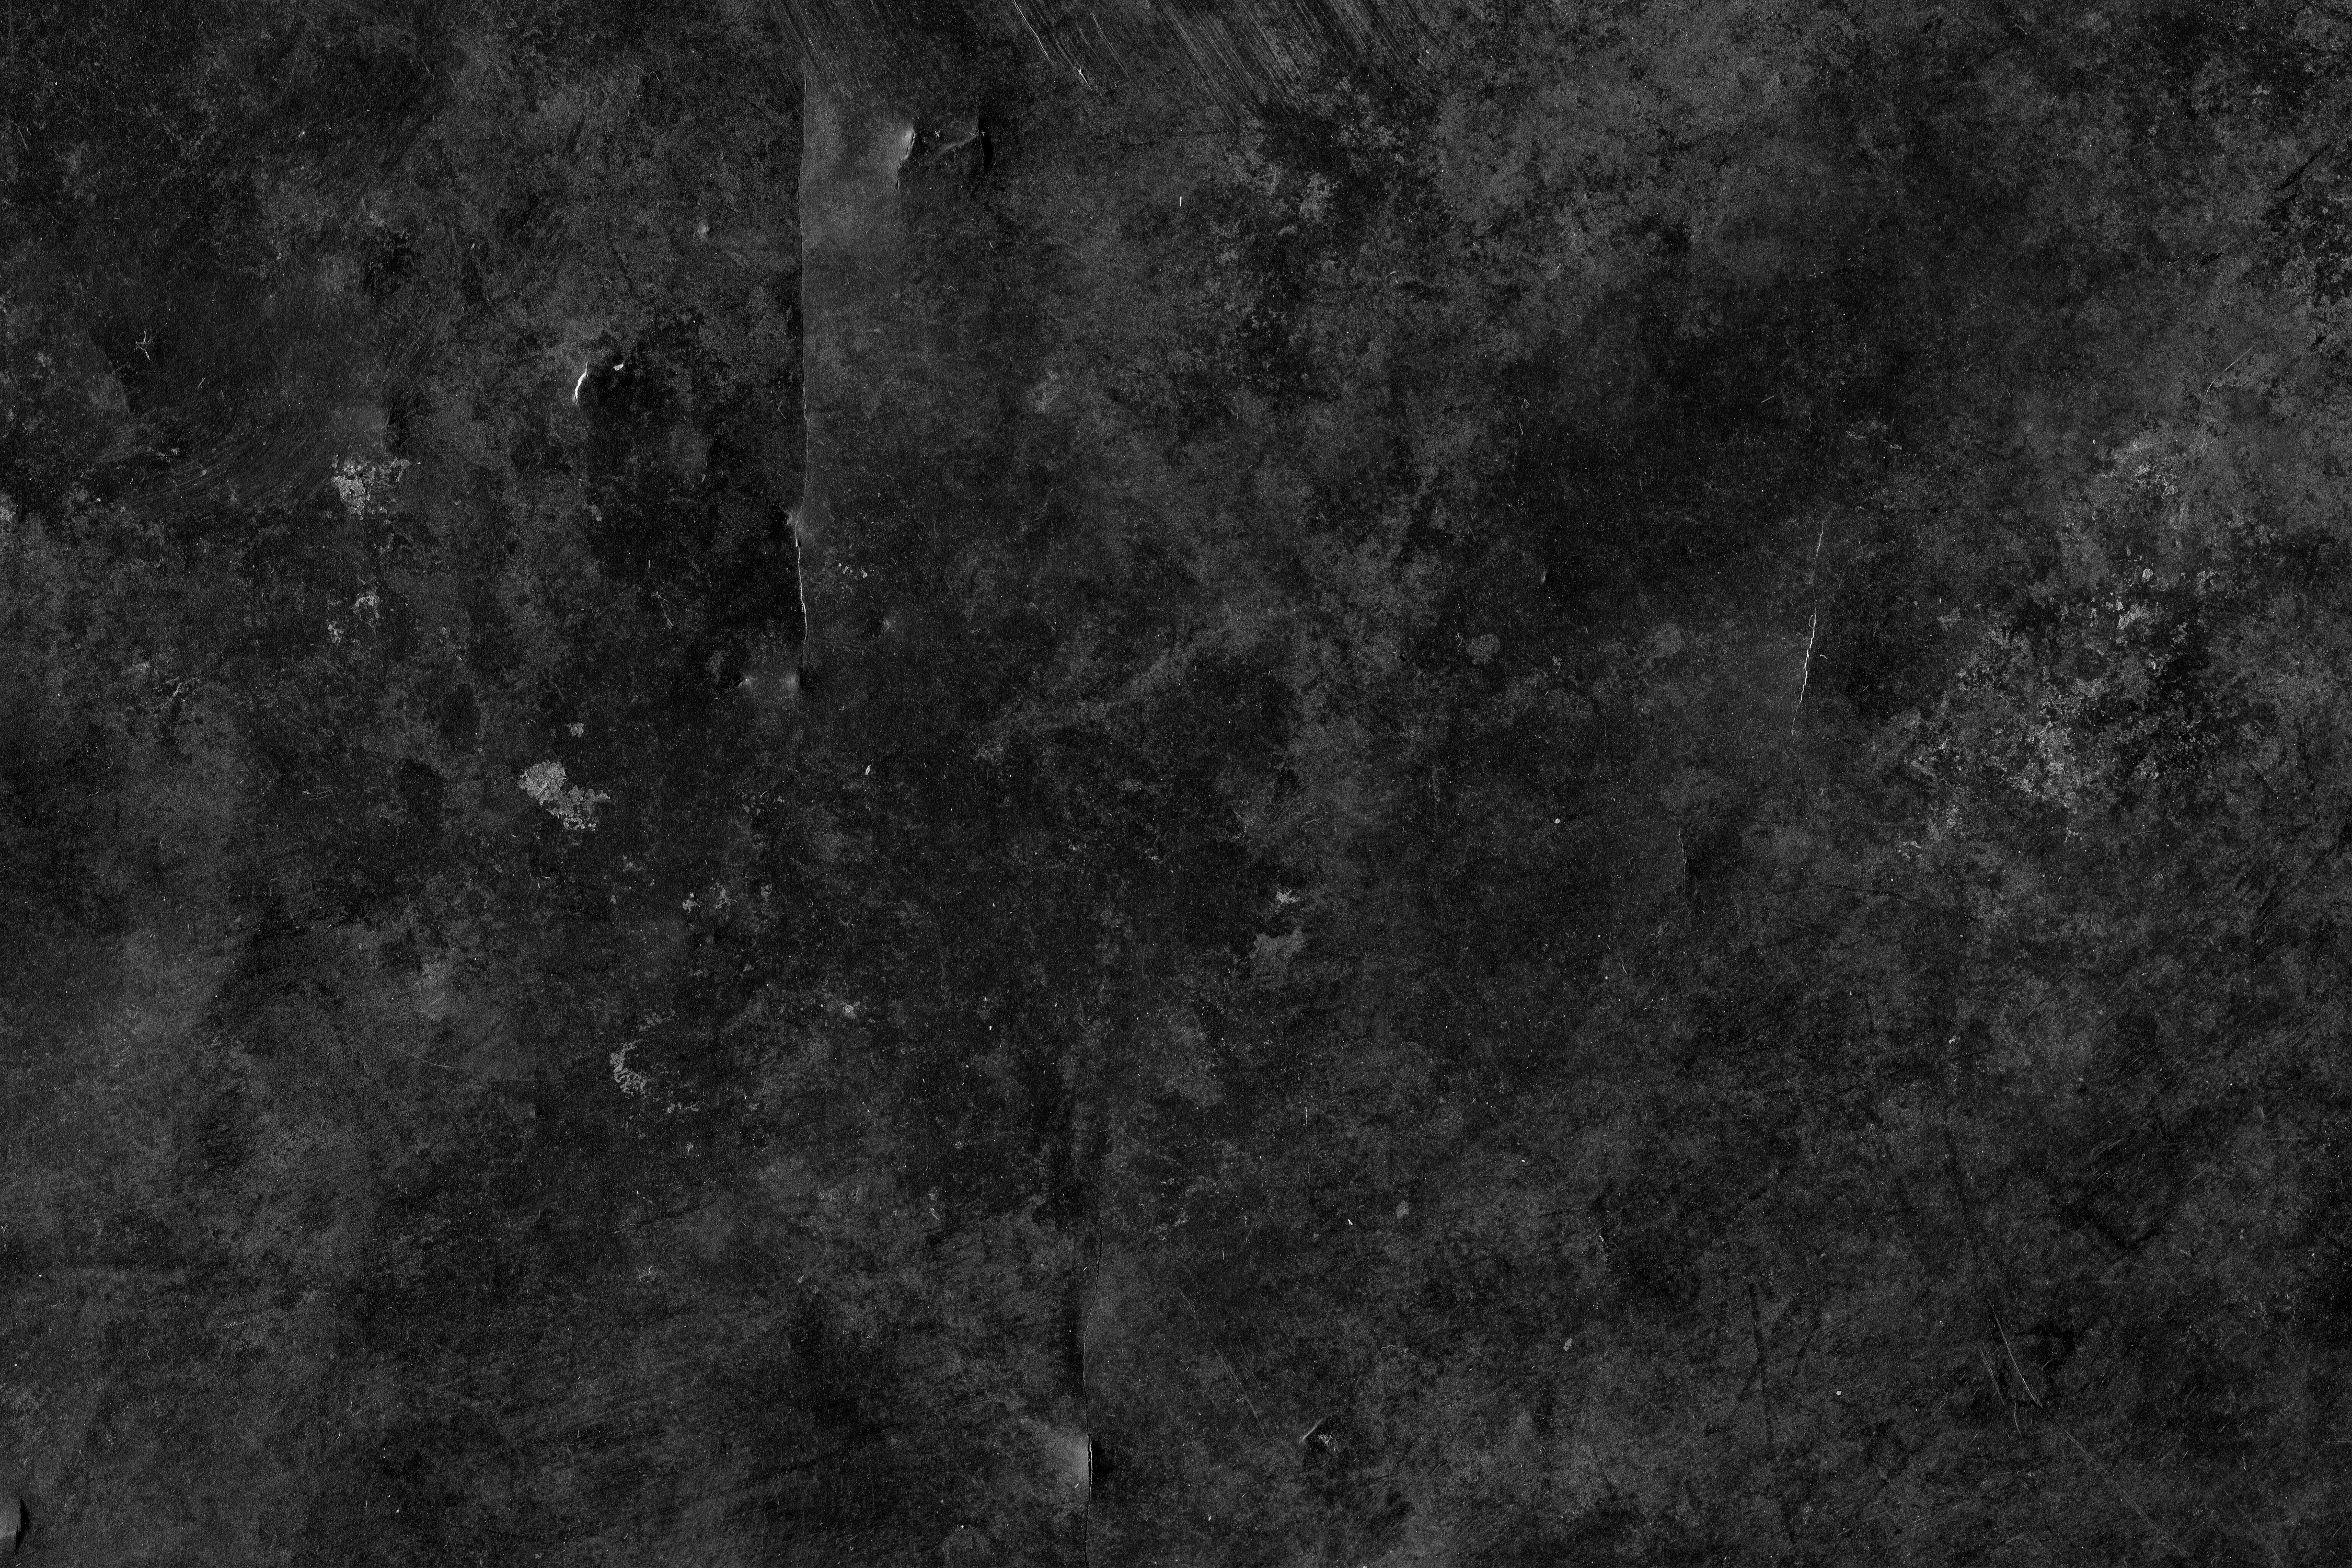 quantenphysik wallpaper,schwarz,schwarz und weiß,einfarbig,monochrome fotografie,dunkelheit